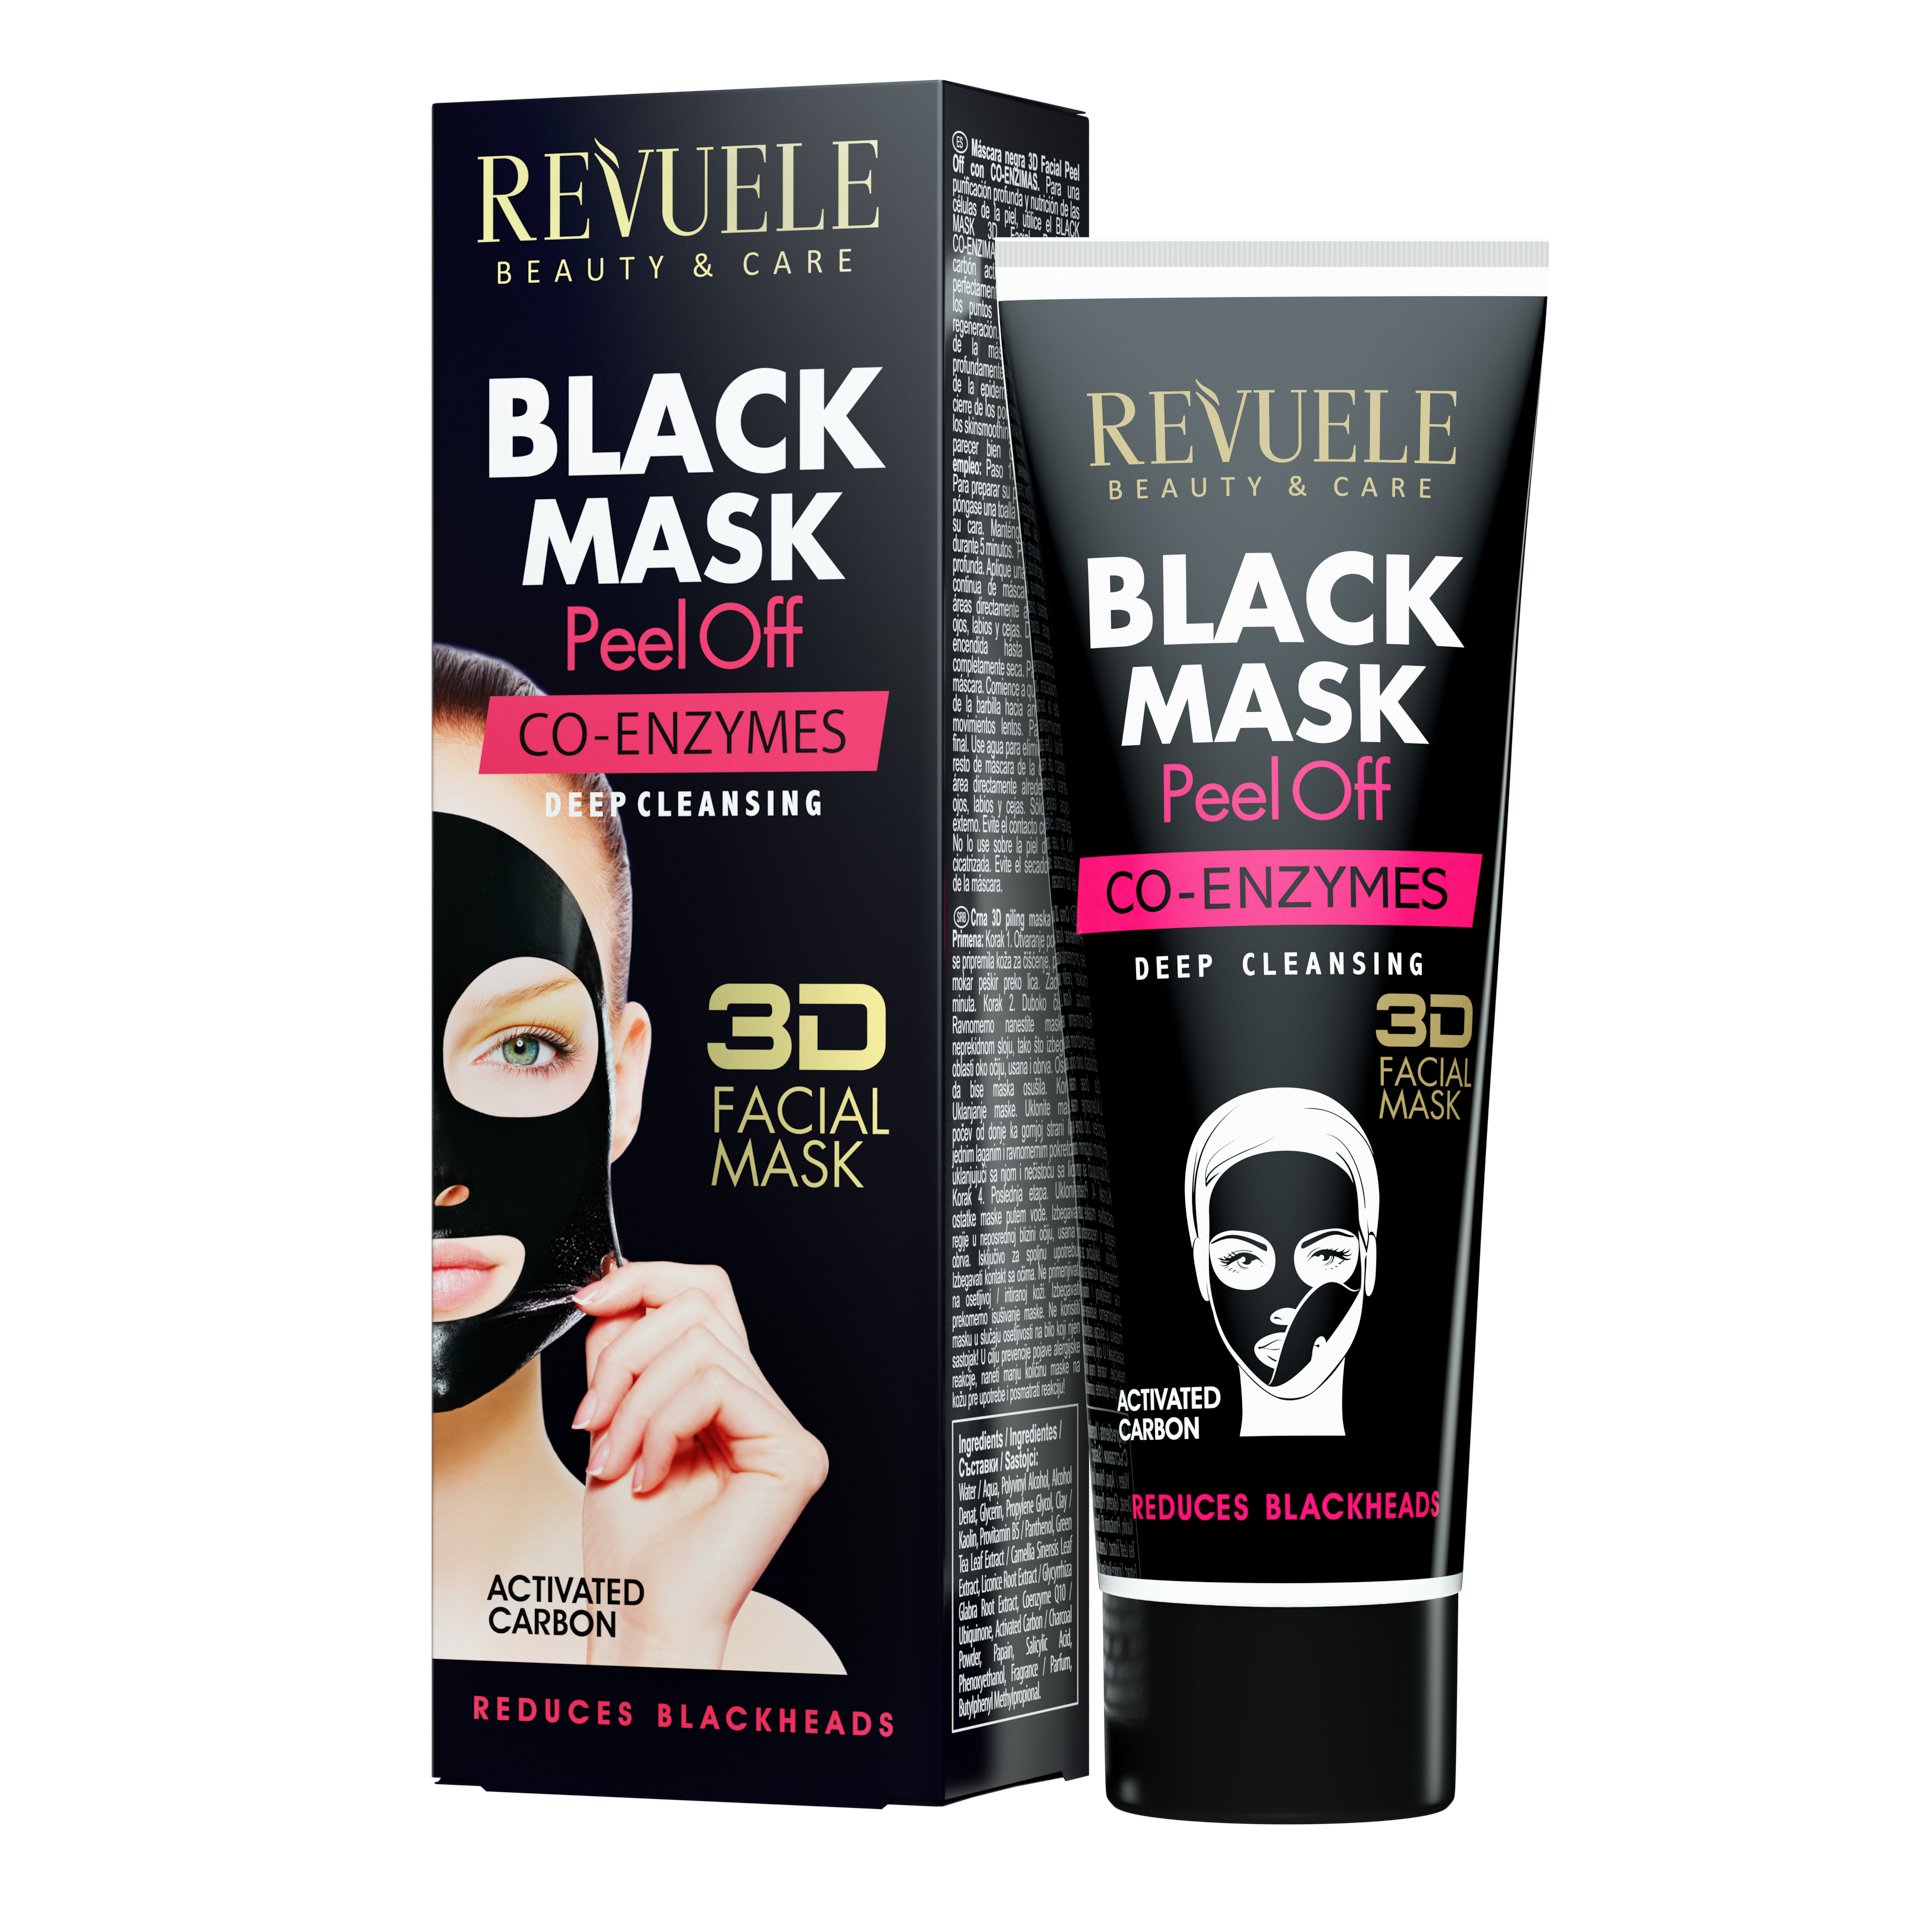 Черная маска-пленка для лица Revuele Black Mask Peel Off Co-Enzymes с коэнзимами, 80 мл - фото 1